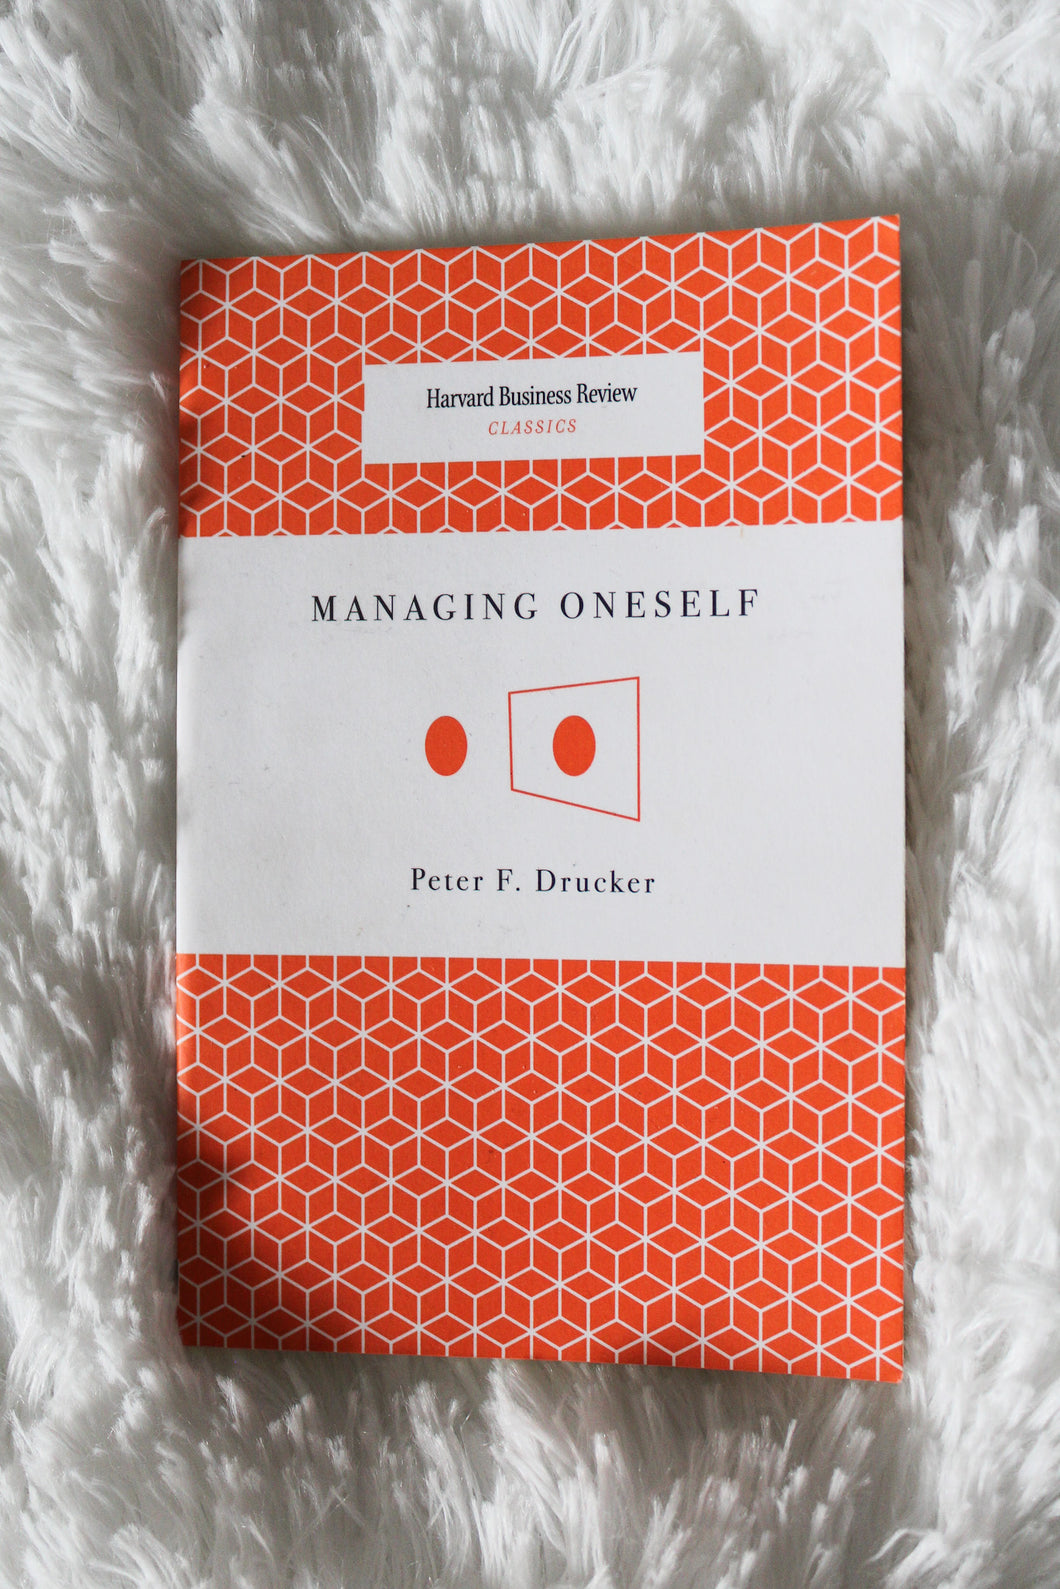 Managing Oneself by Peter F Drucker